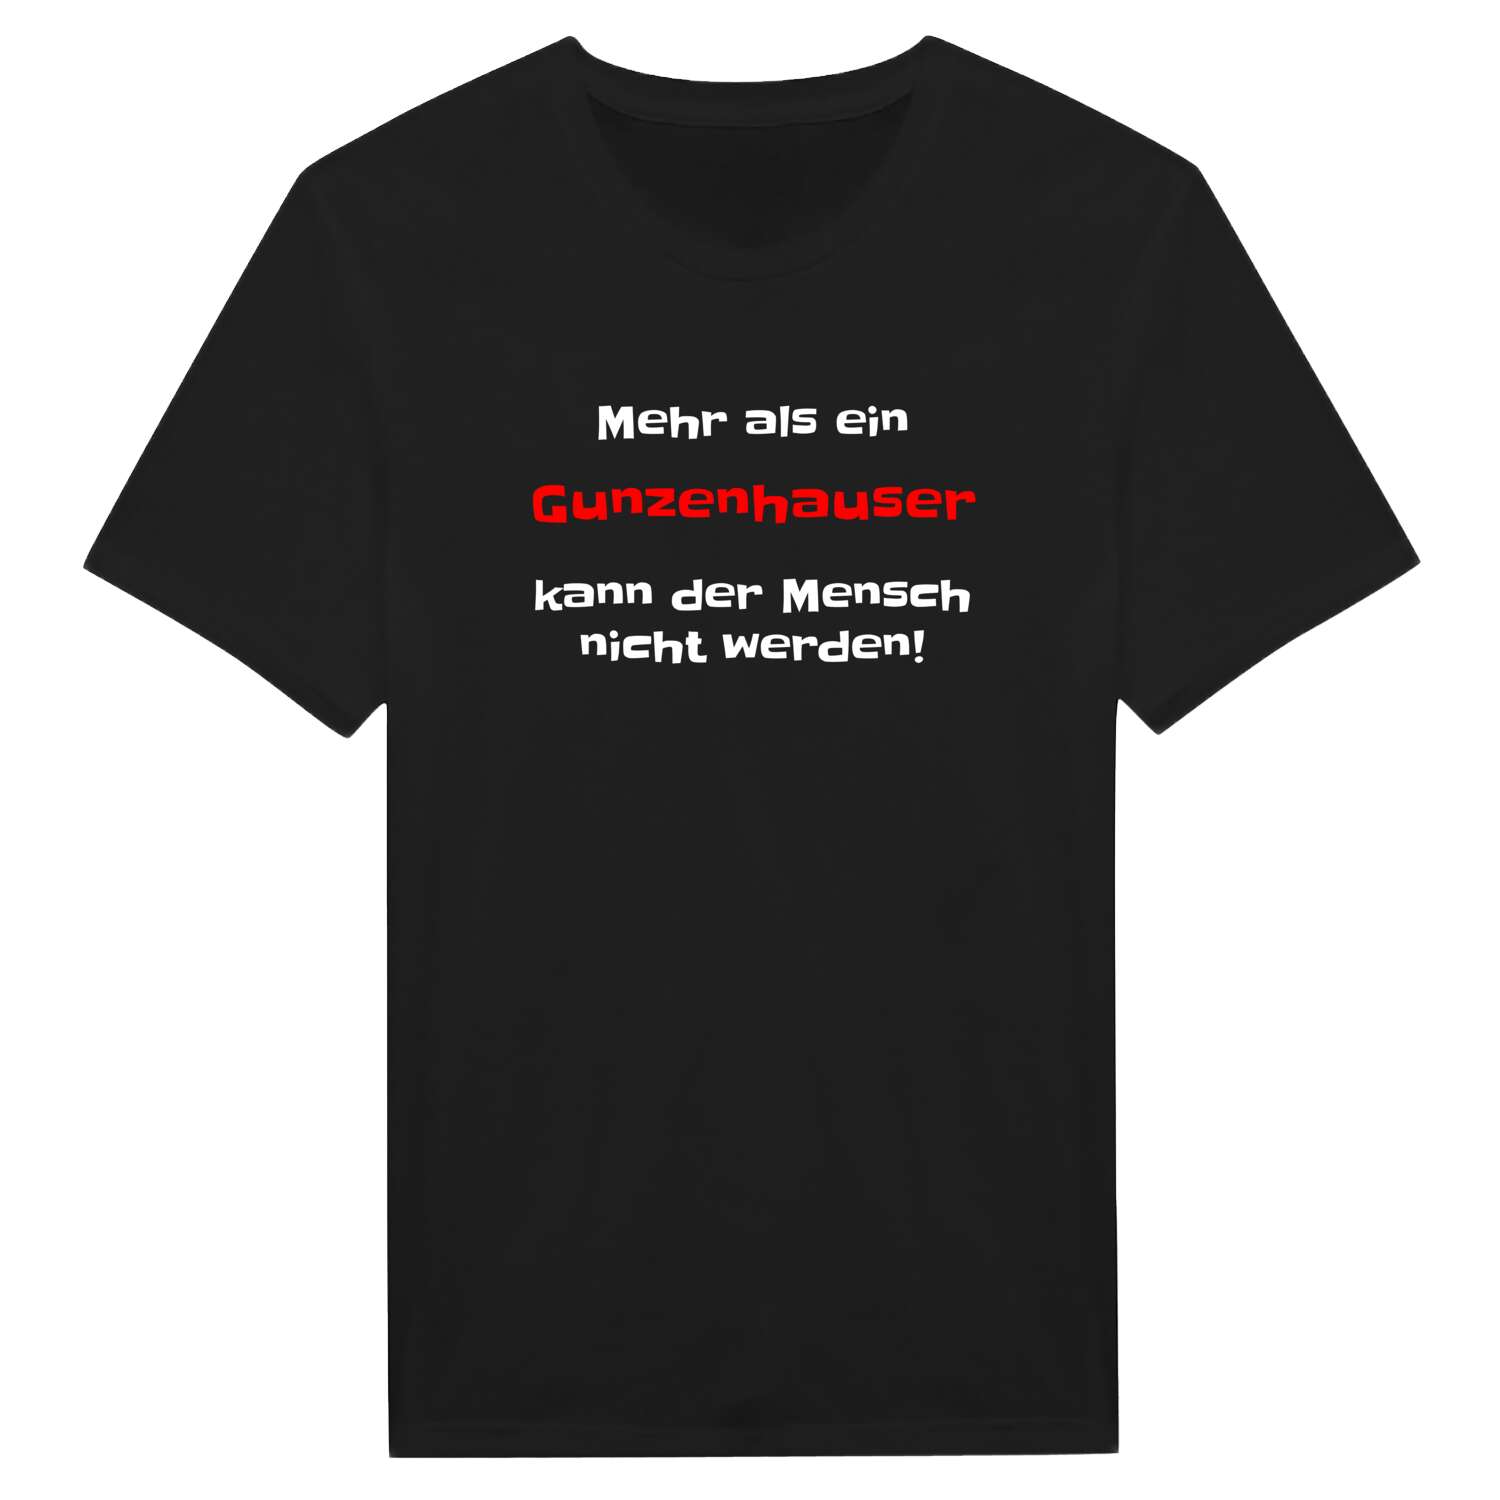 Gunzenhaus T-Shirt »Mehr als ein«